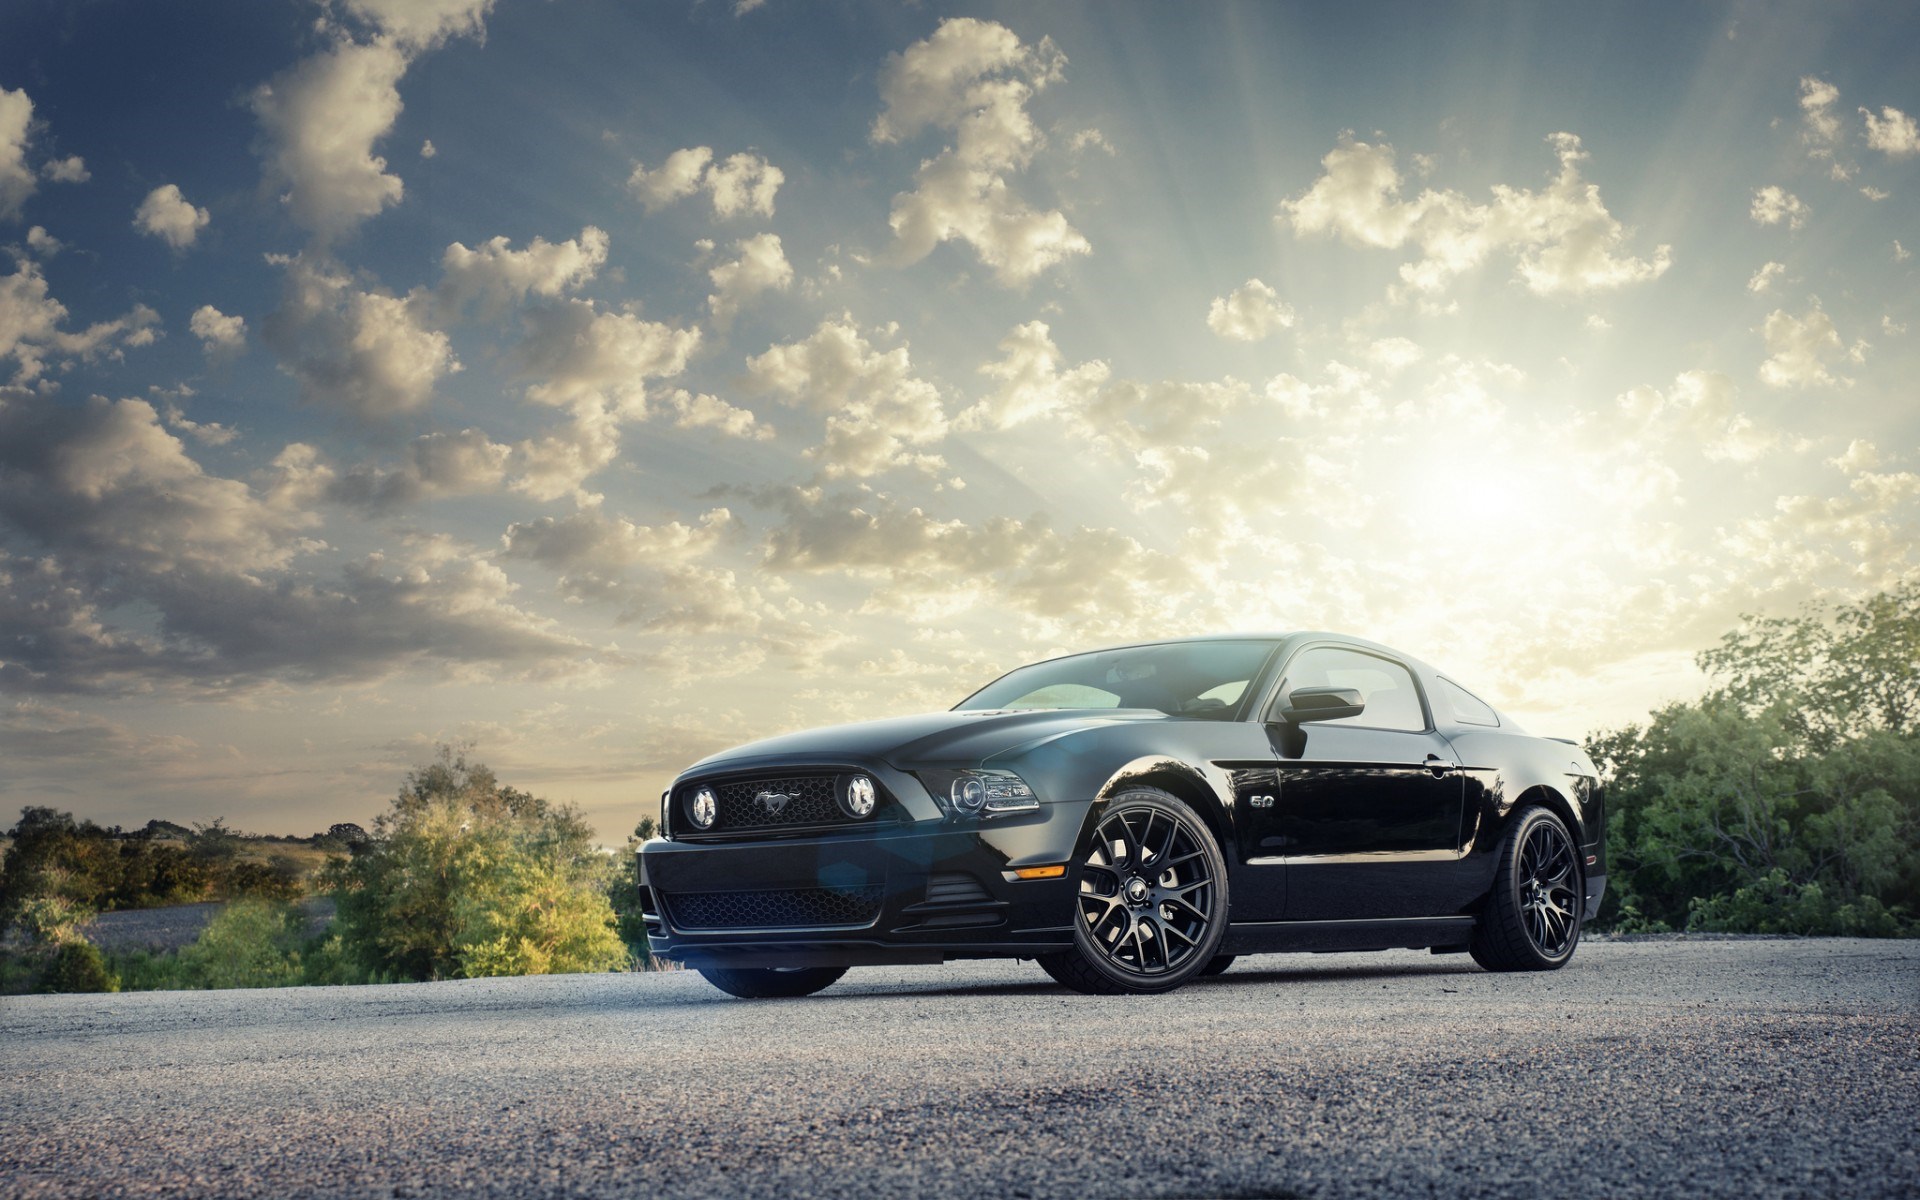 Ford Mustang - chiếc xe huyền thoại với thiết kế hoàn hảo và sự tinh tế trong từng đường nét, cho bạn cảm giác lái xe tuyệt vời hơn bao giờ hết. Hãy để hình ảnh Ford Mustang trở thành nguồn cảm hứng và niềm tự hào trên màn hình của bạn.